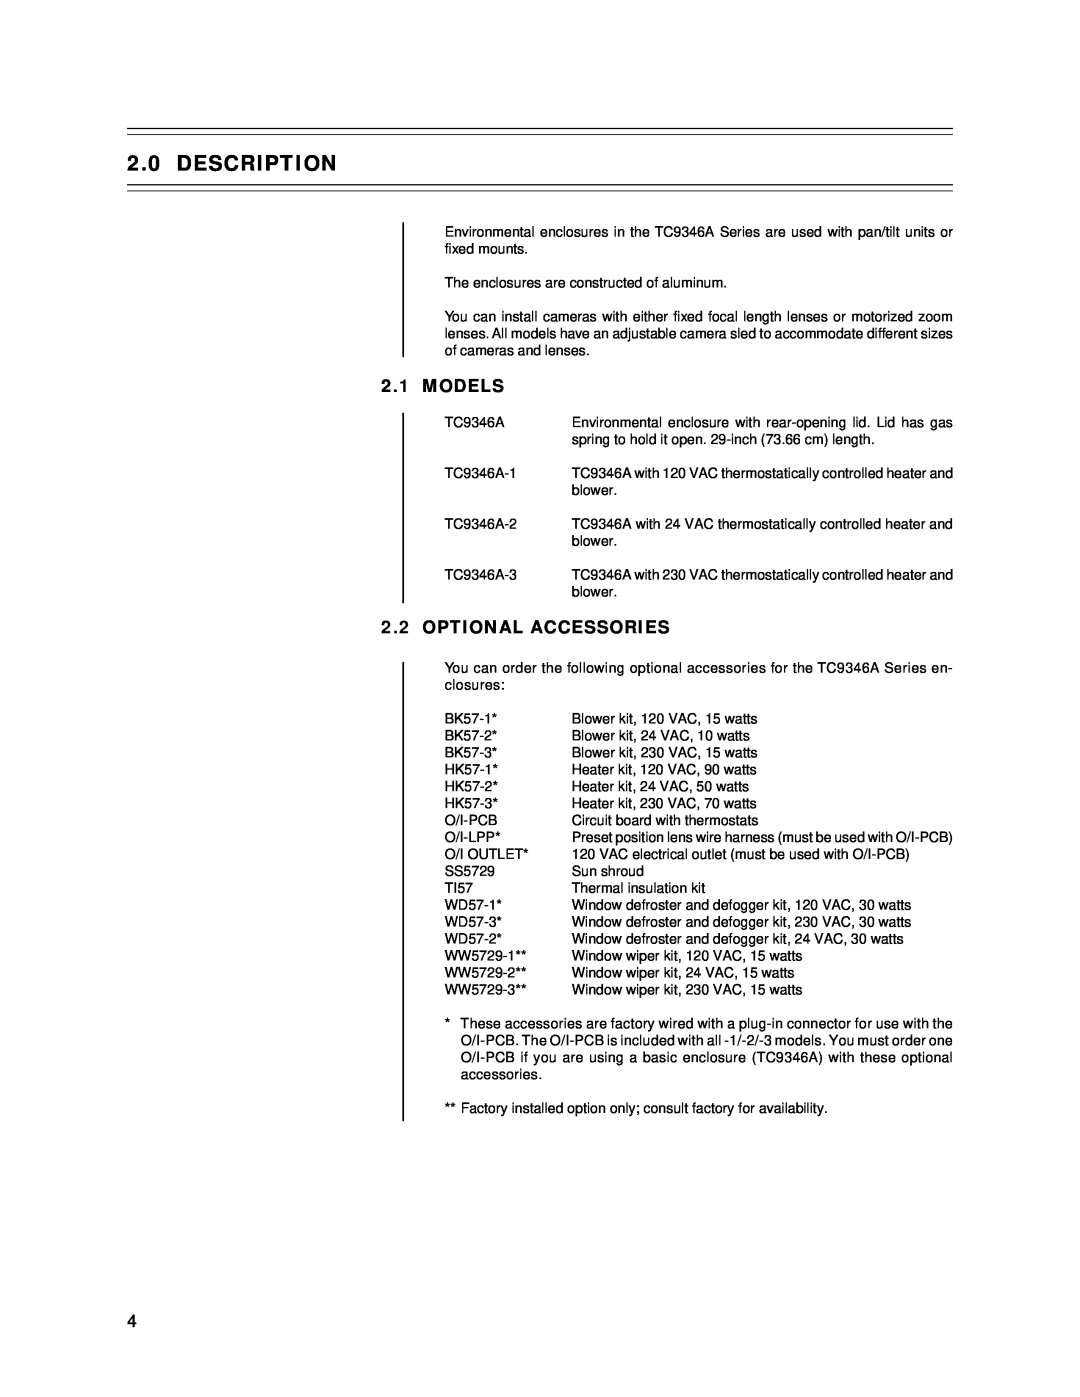 Bosch Appliances tc9346a instruction manual Description, Models, Optional Accessories 